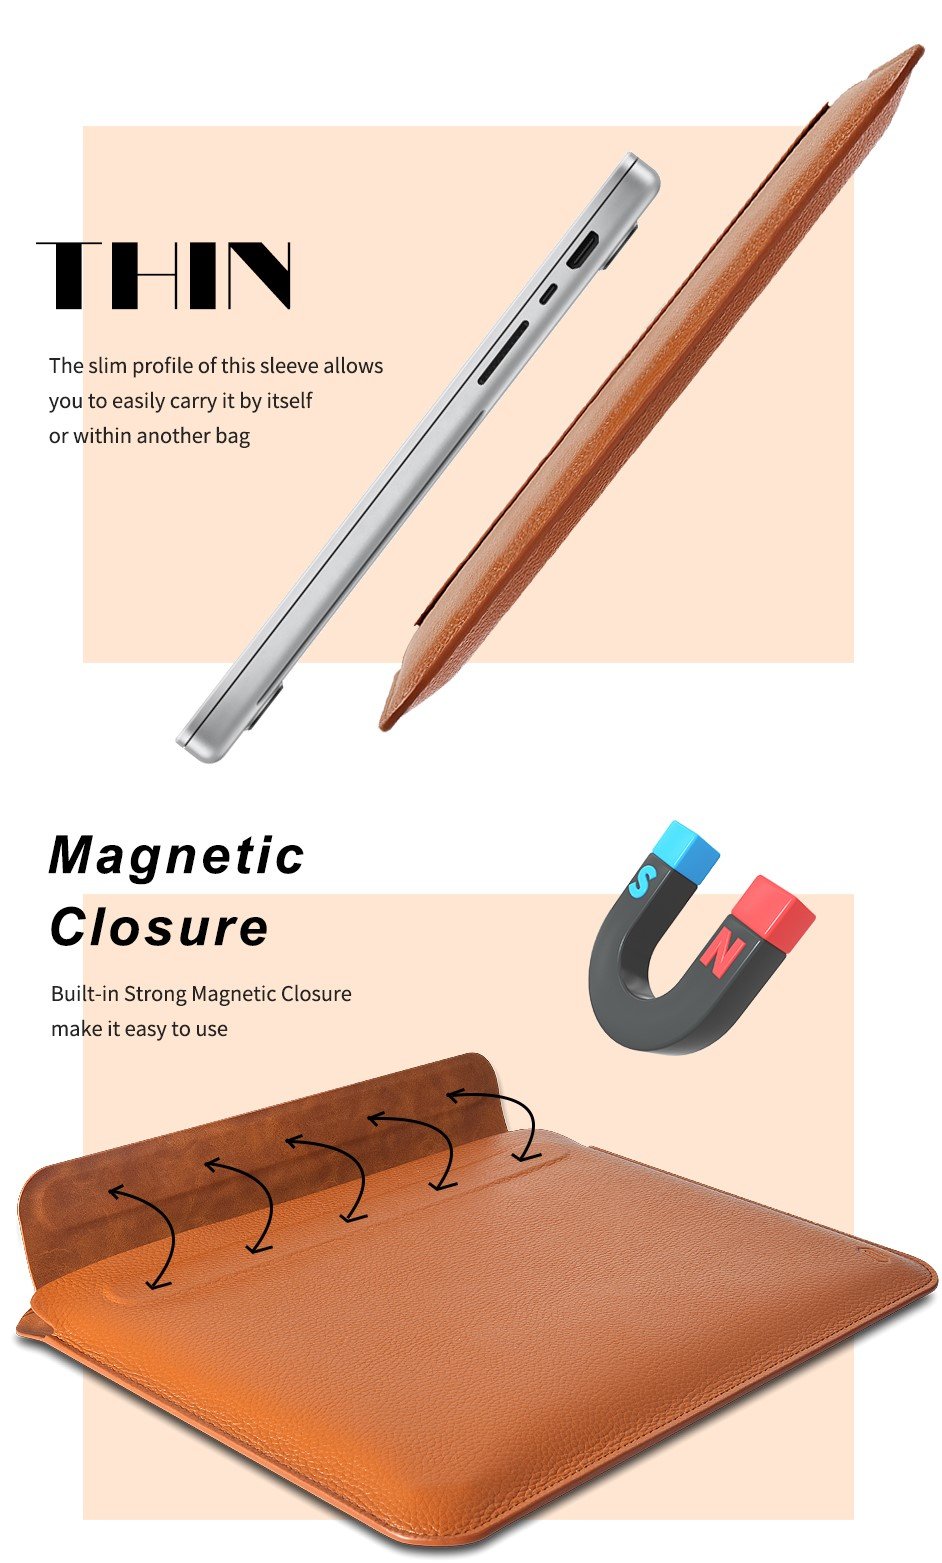 Bao Wiwu Genuine Leather Sleeve Dành cho Macbook Chất liệu Da Cao Cấp, Chống Thấm Nước - Hàng Chính Hãng